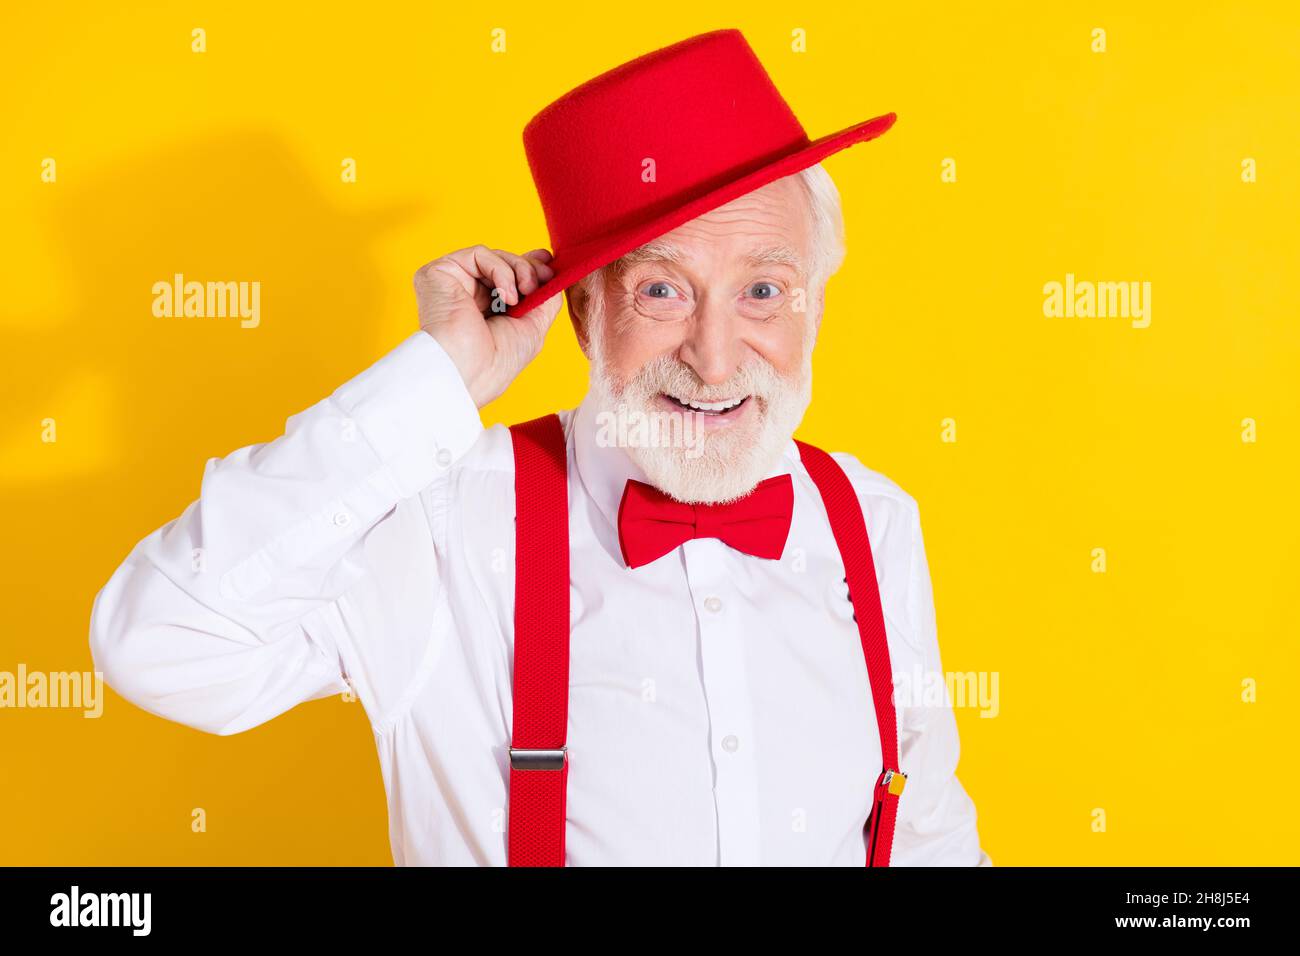 Foto von cool gealterten Mann Kleid rote Mütze tragen Krawatte Hemd Hosenträger Hose isoliert auf gelbem Hintergrund Stockfoto